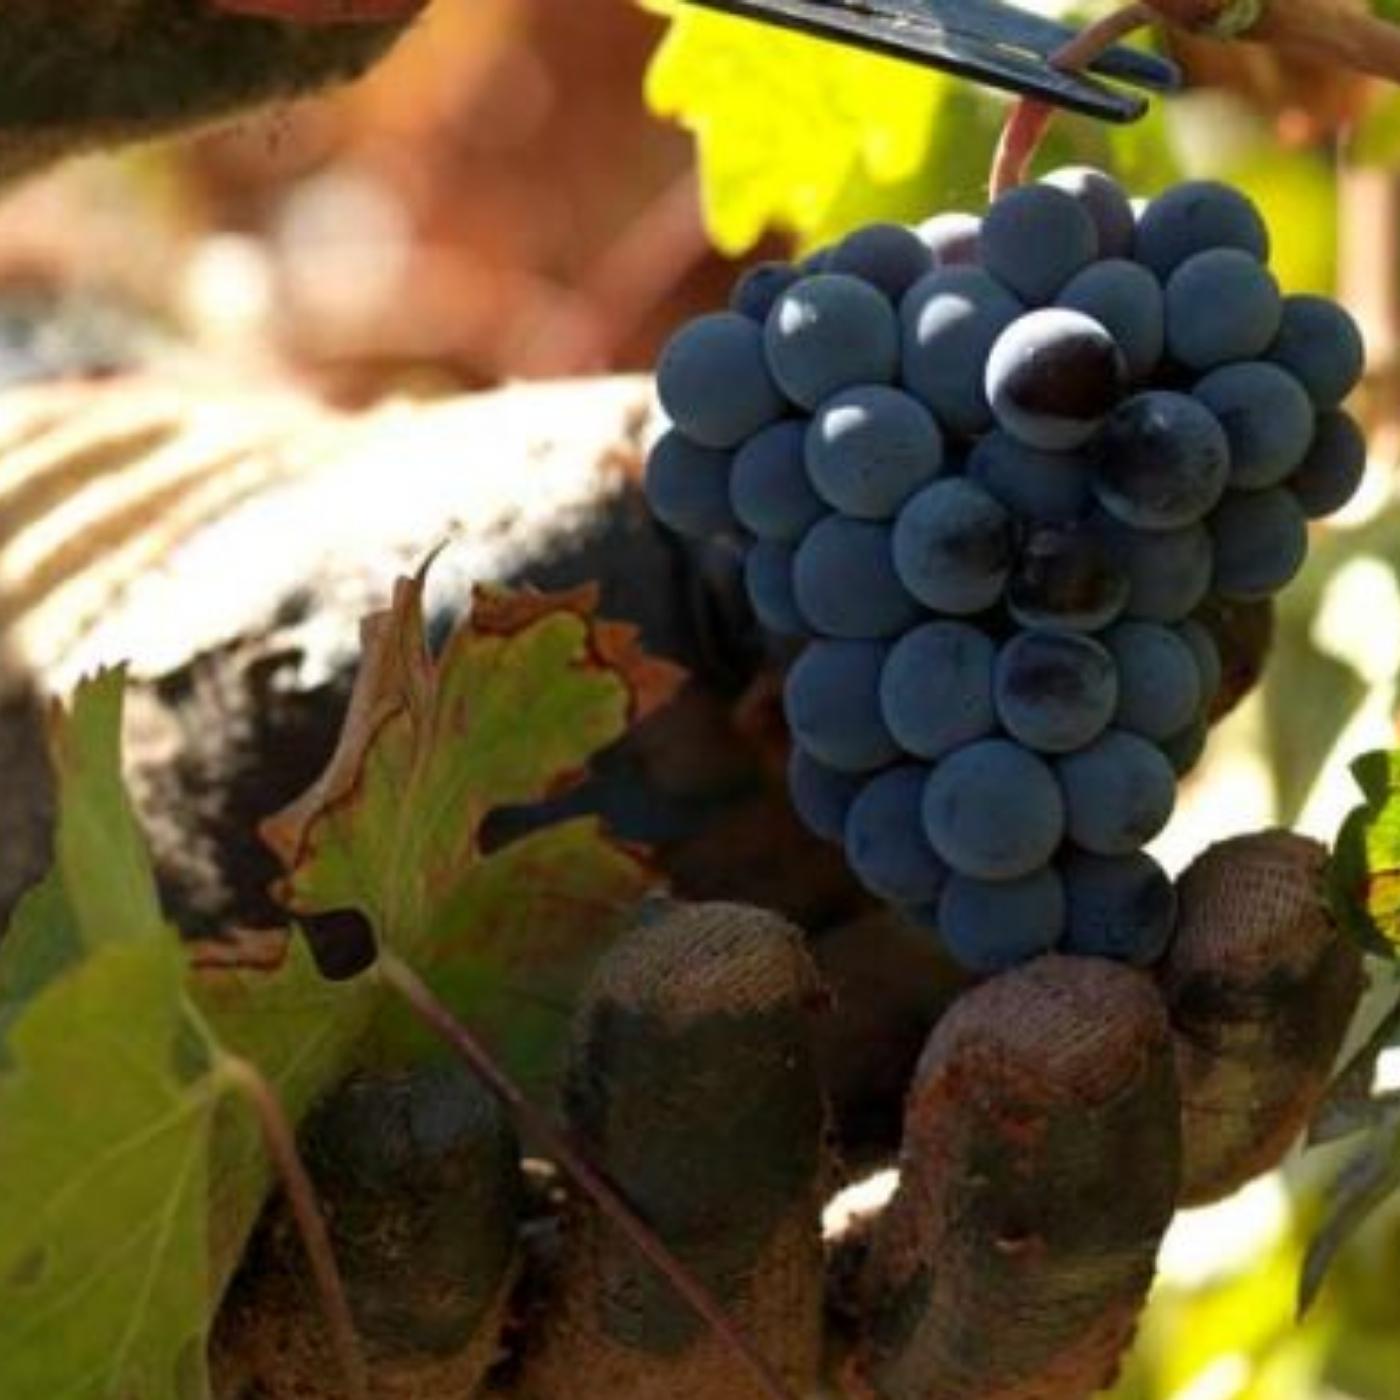 Weingut Quinta do Mouro in Portugal. Im Bild sind Weinstöcke / Weinreben zu sehen mit blauen Trauben und grünen Blättern. 